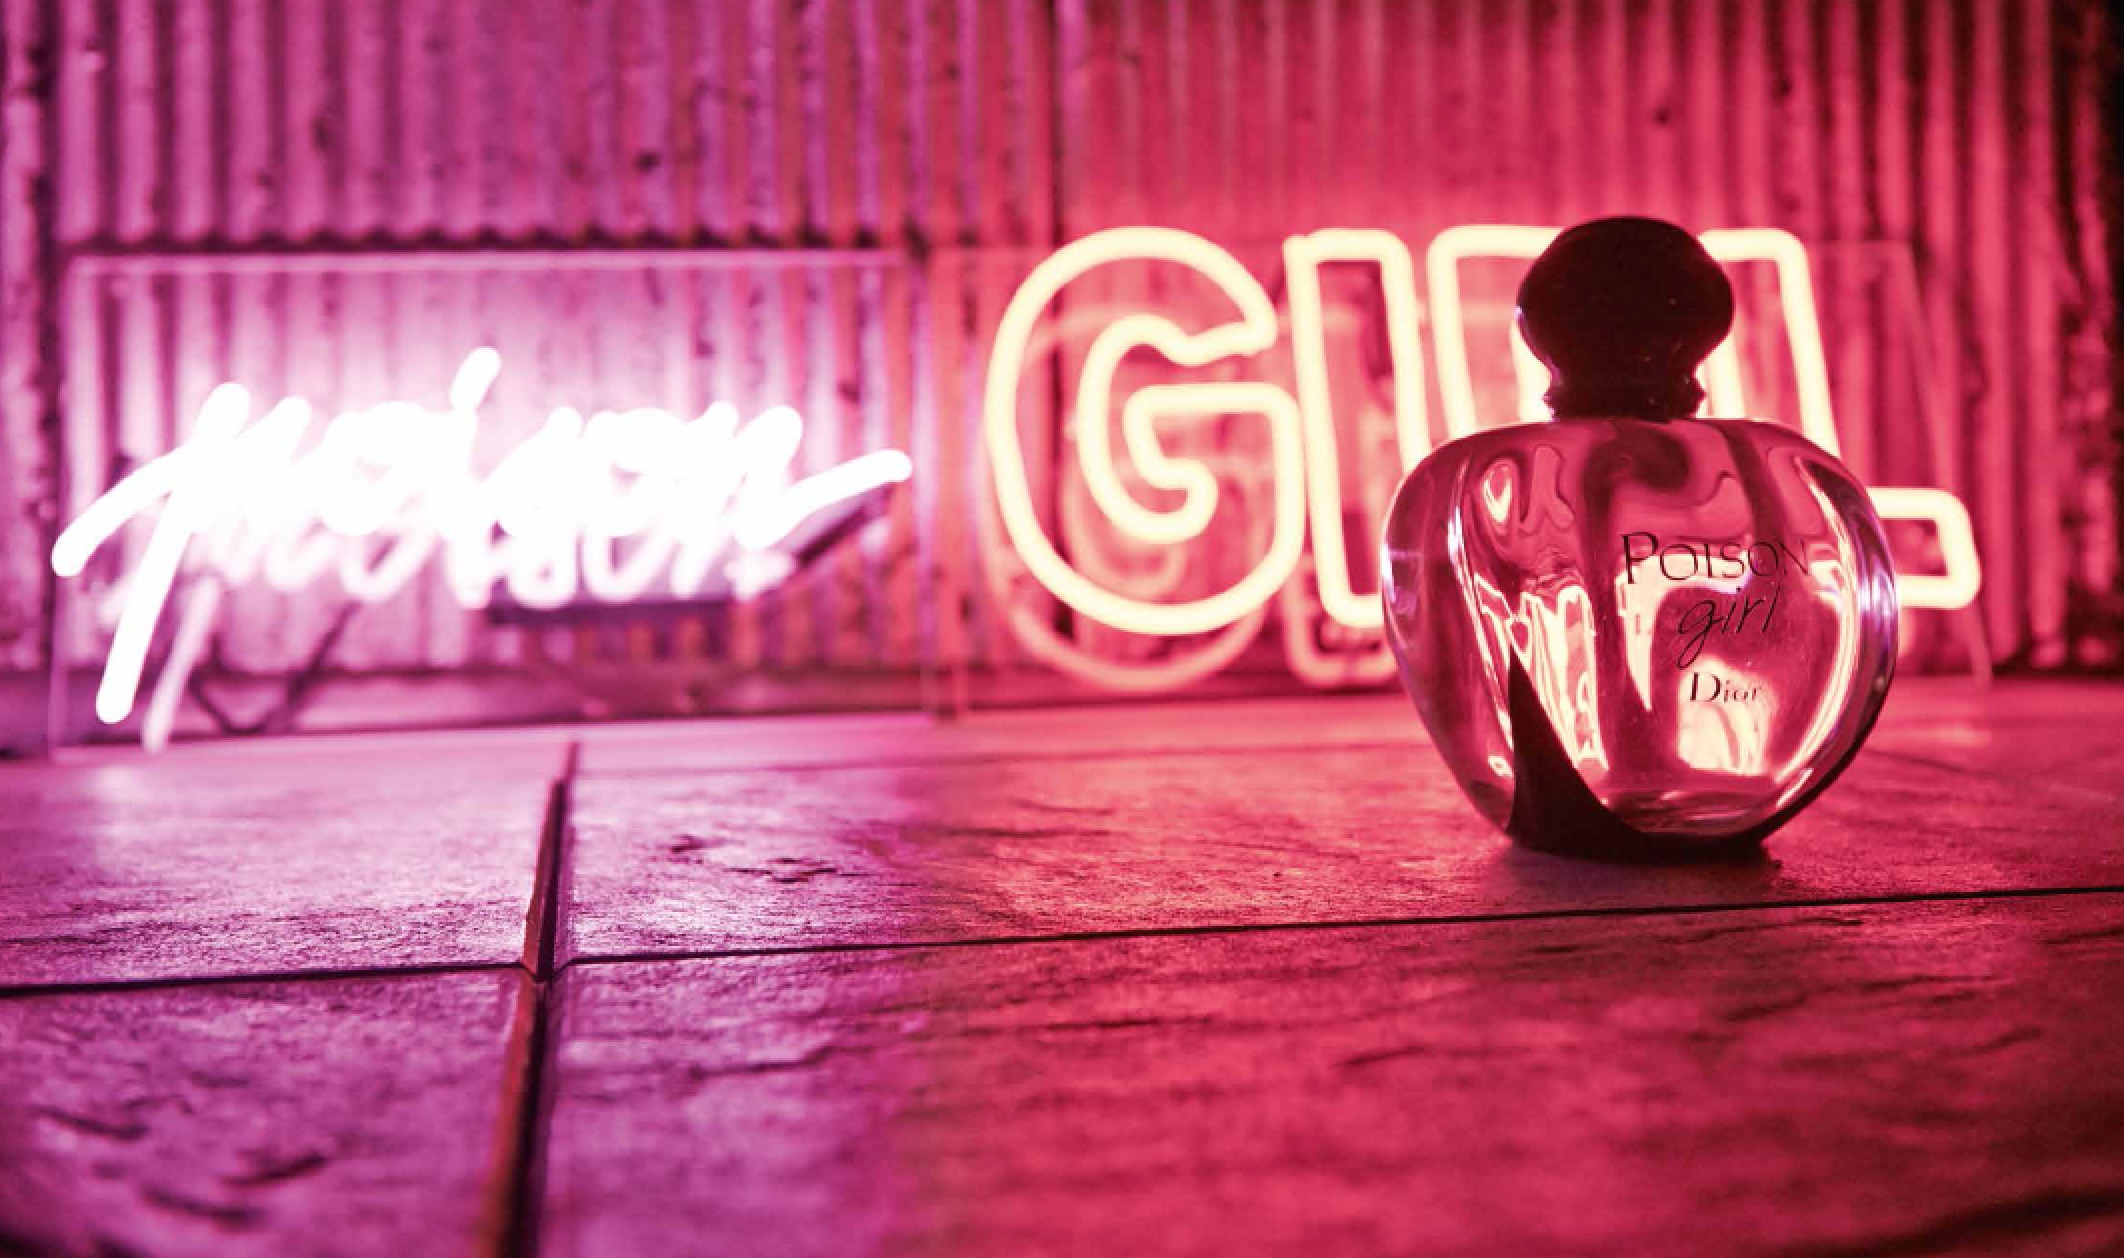 Poison Girl Christian Dior for women neon ışıklı yazılı ve şişe poison-girl-3.jpg